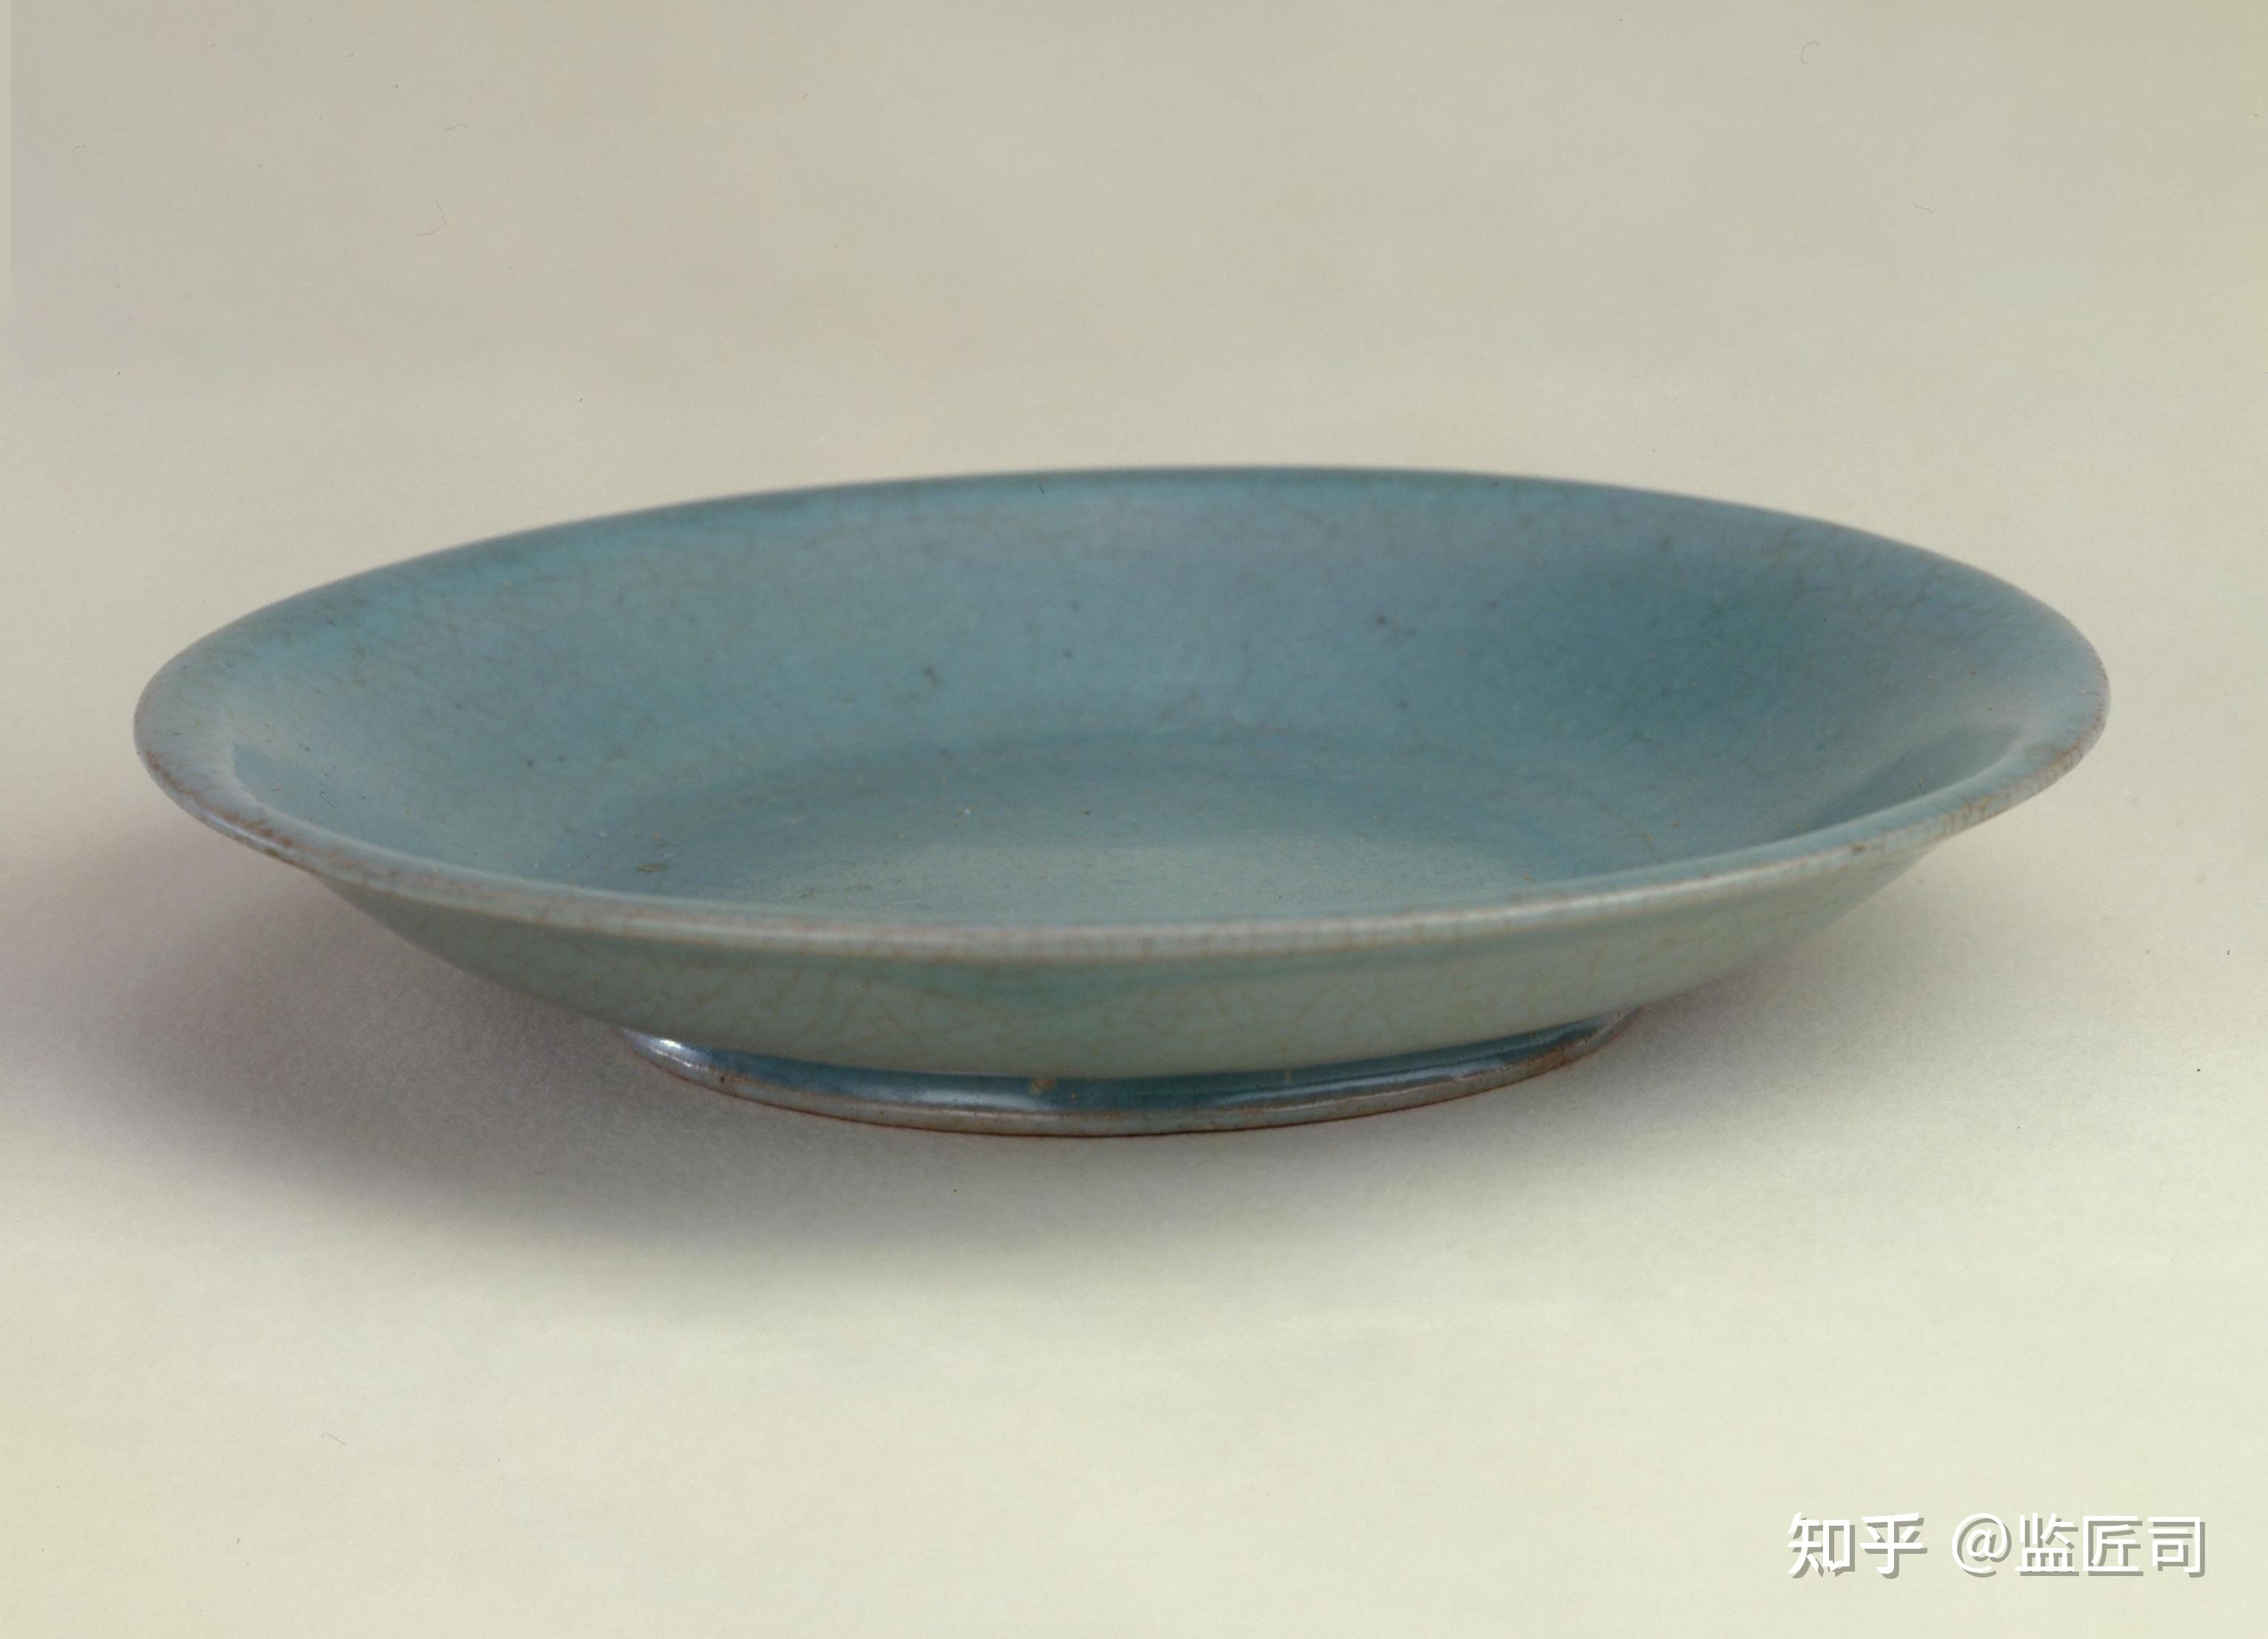 宋代人都使用什么样的盘子盛菜?62图赏宋代各式瓷碟,瓷盘